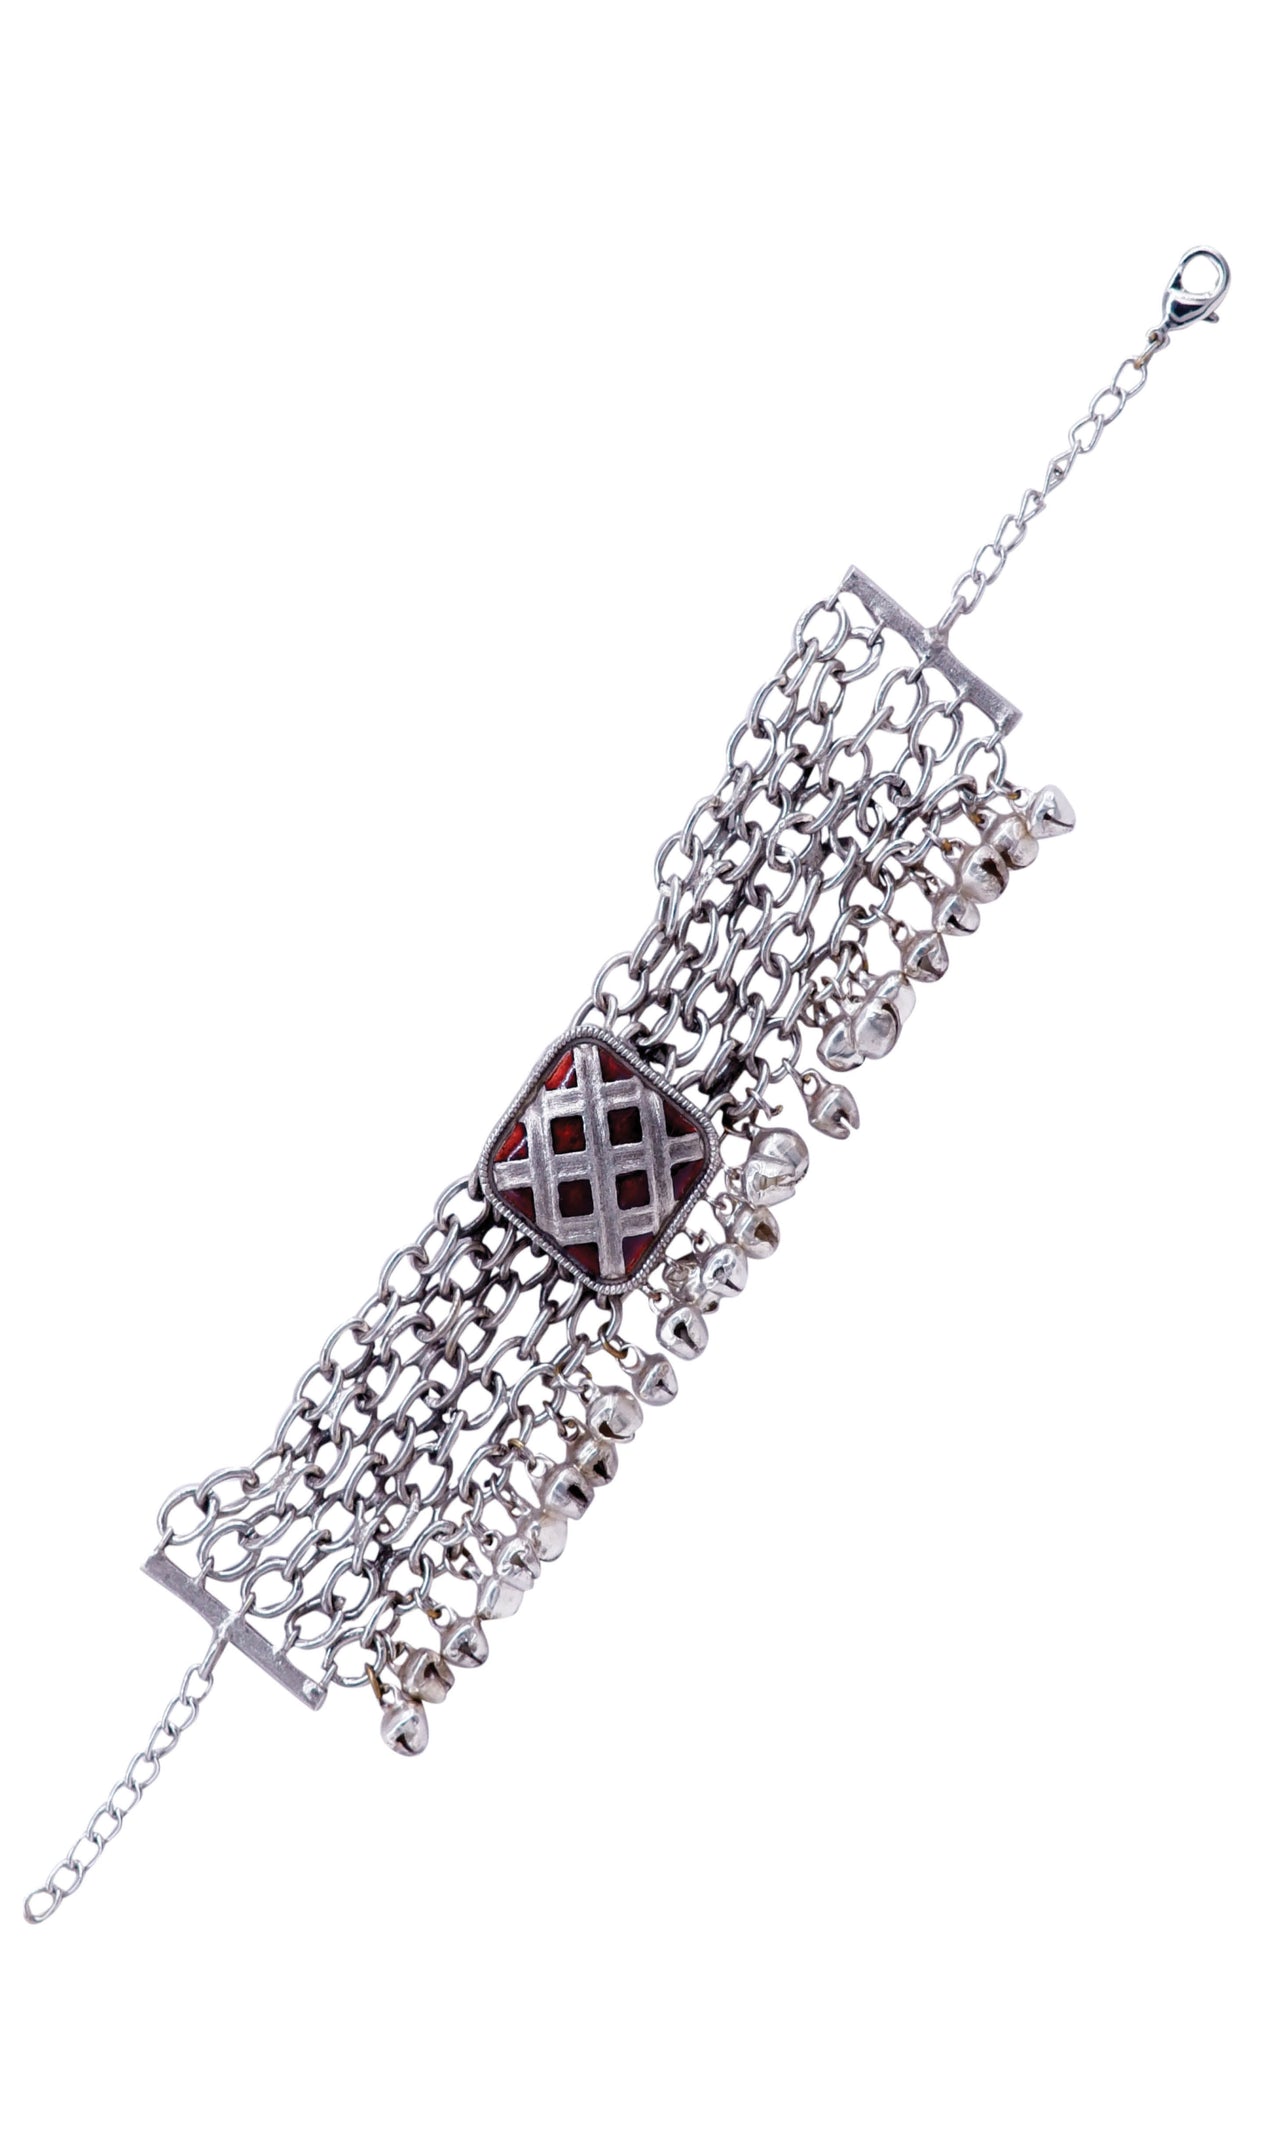 Silver chain design bracelet for women